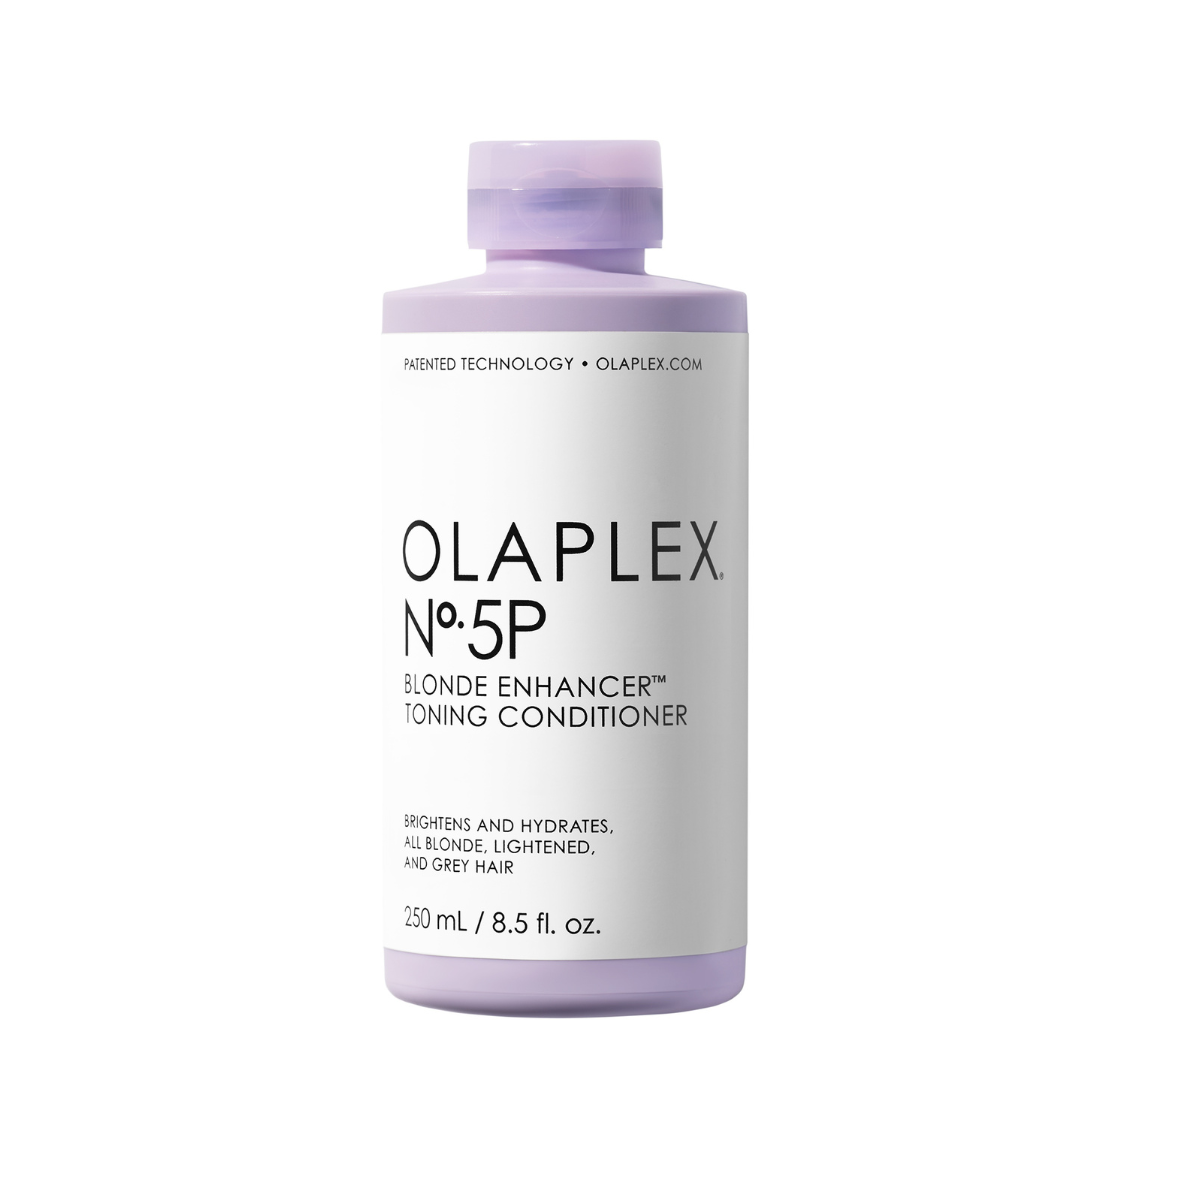 Olaplex No.5p Blonde Enhancer Toning Conditioner